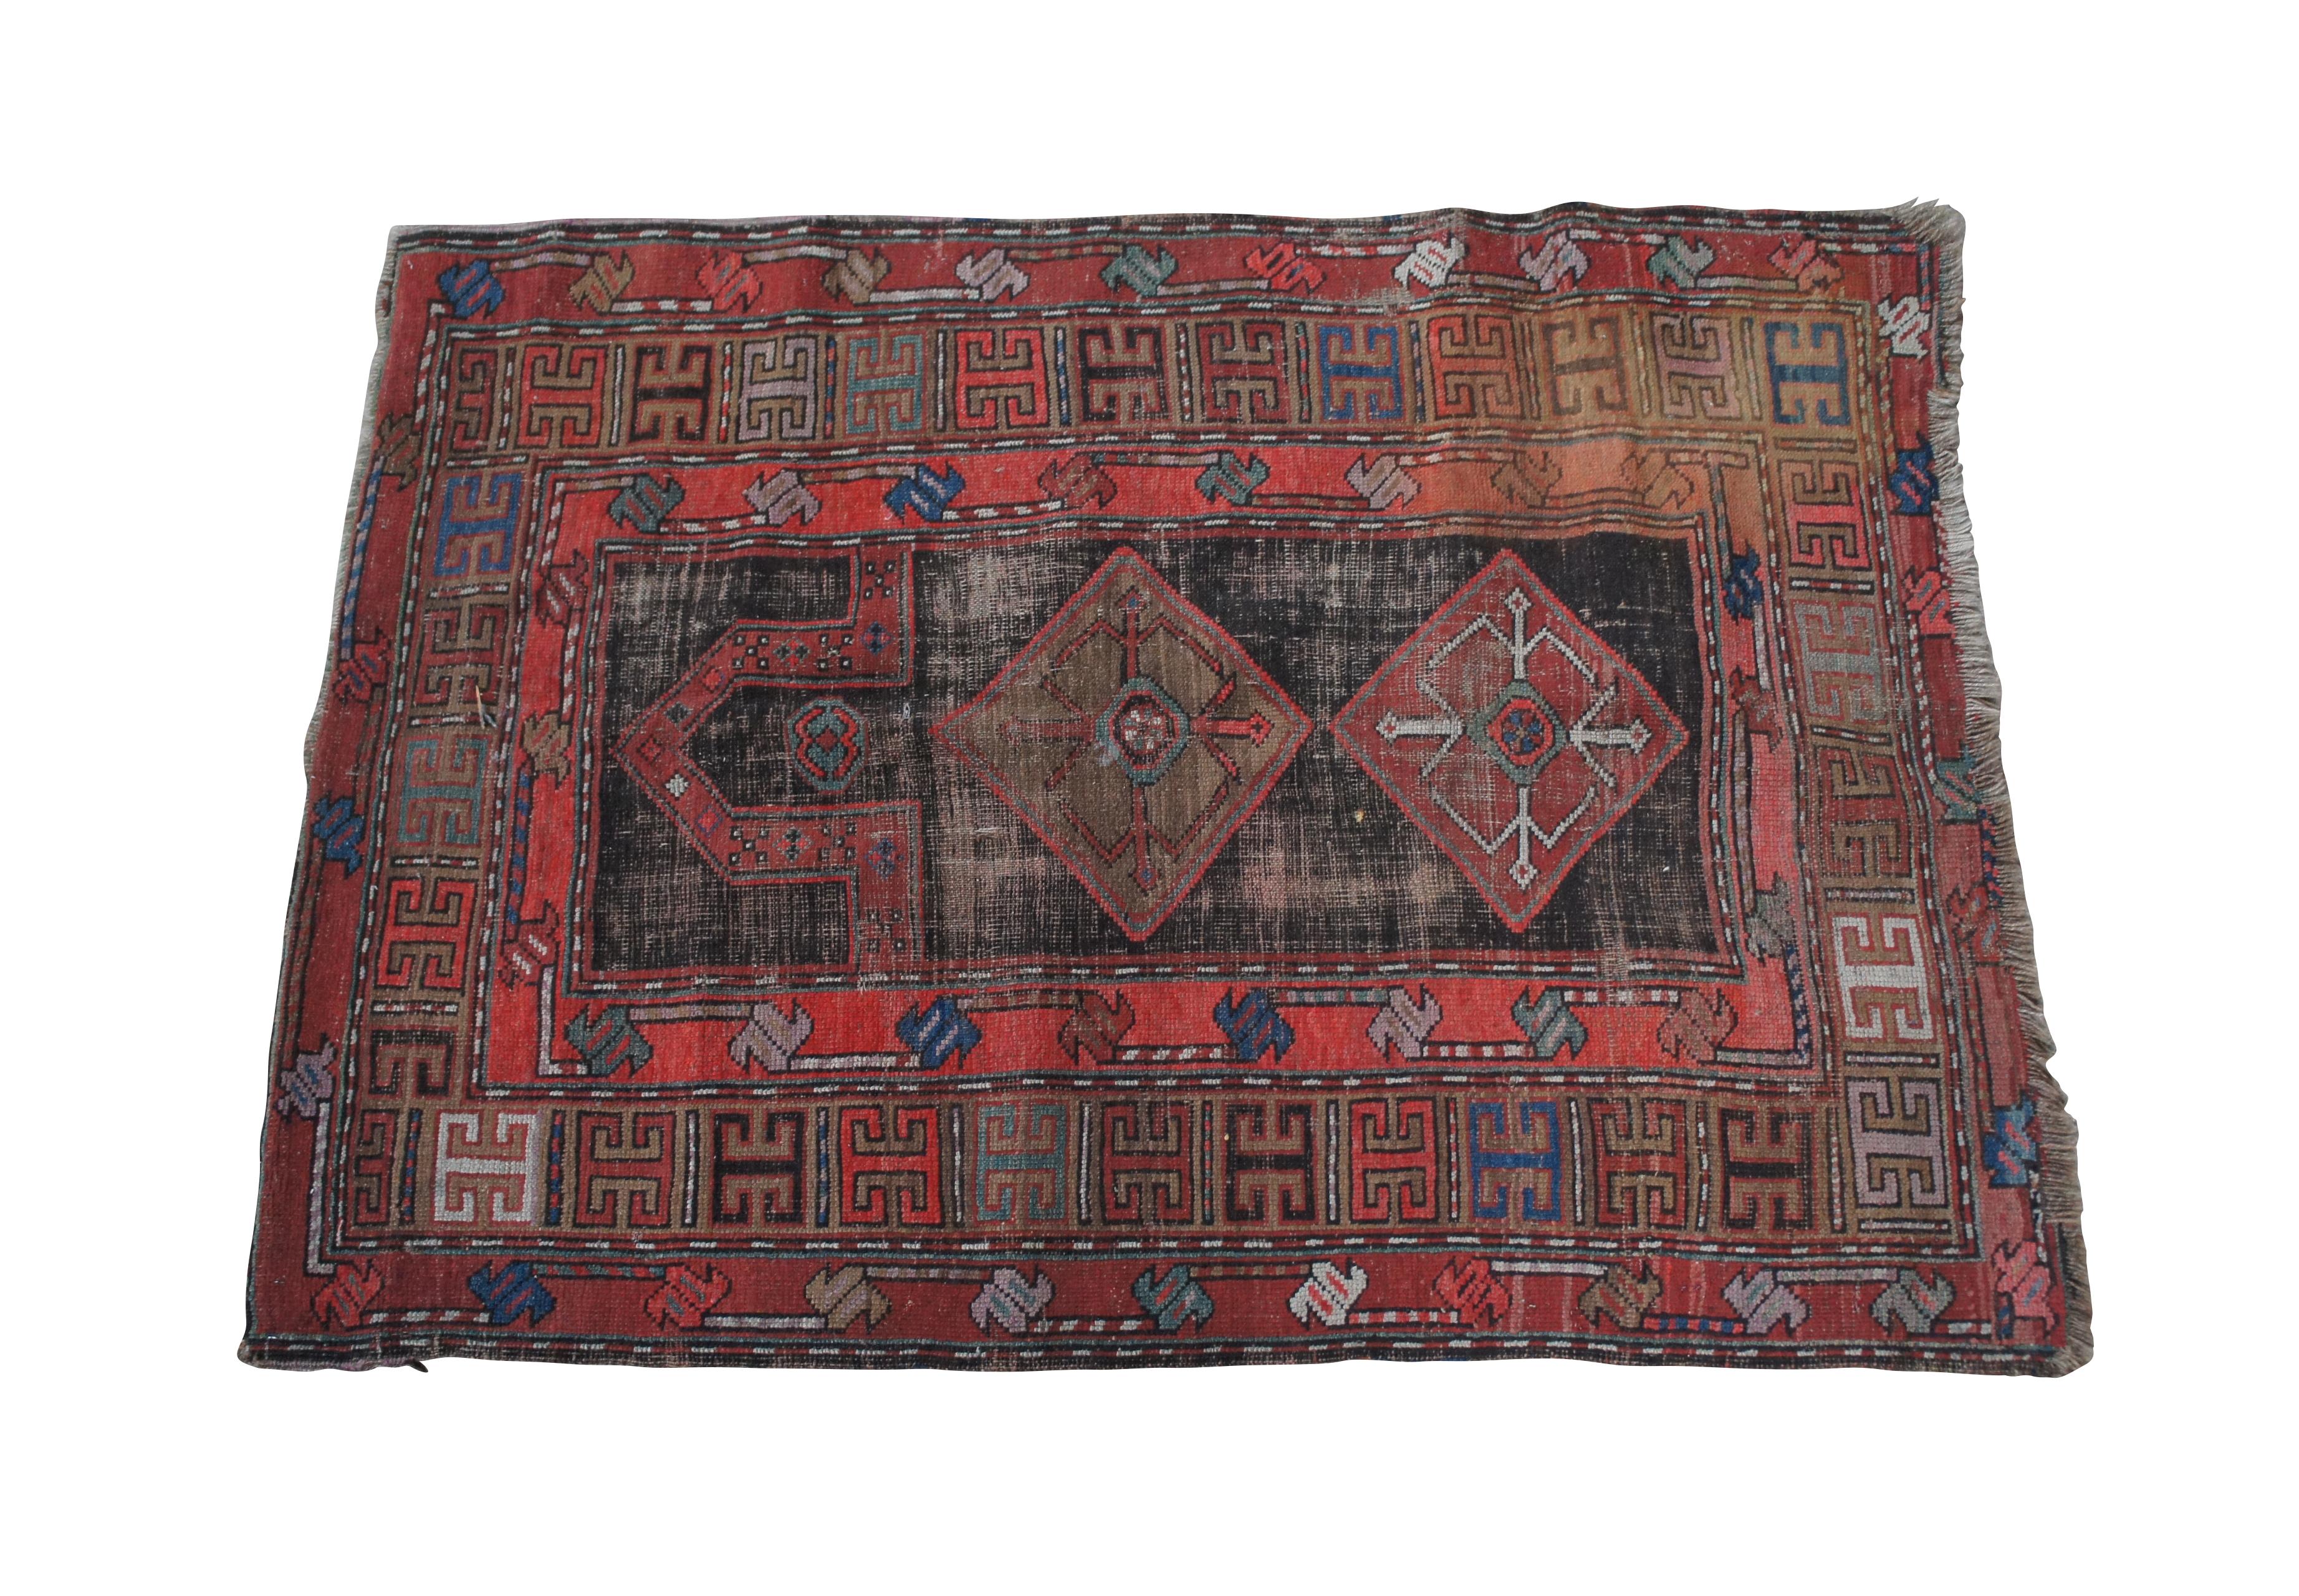 Antiker handgewebter südkaukasischer Gebetsteppich aus roter und blauer Wolle aus Karabagh, ca. 1900-1920.  Mit einem rautenförmigen geometrischen Feld, eingerahmt von abwechselnd farbigen #-Zeichen. 3'3